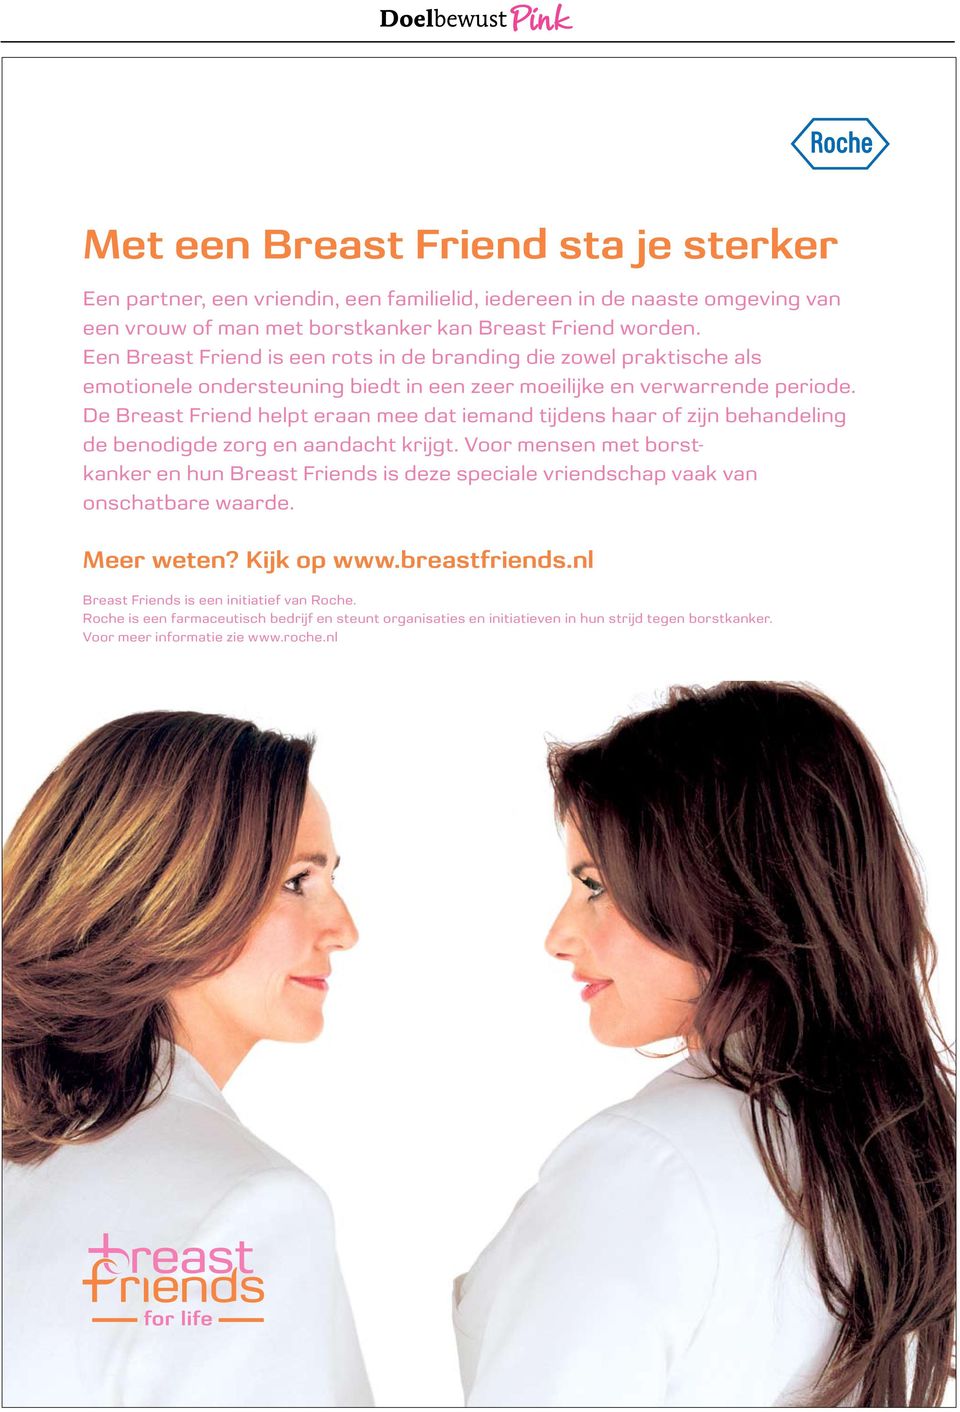 De Breast Friend helpt eraan mee dat iemand tijdens haar of zijn behandeling de benodigde zorg en aandacht krijgt.